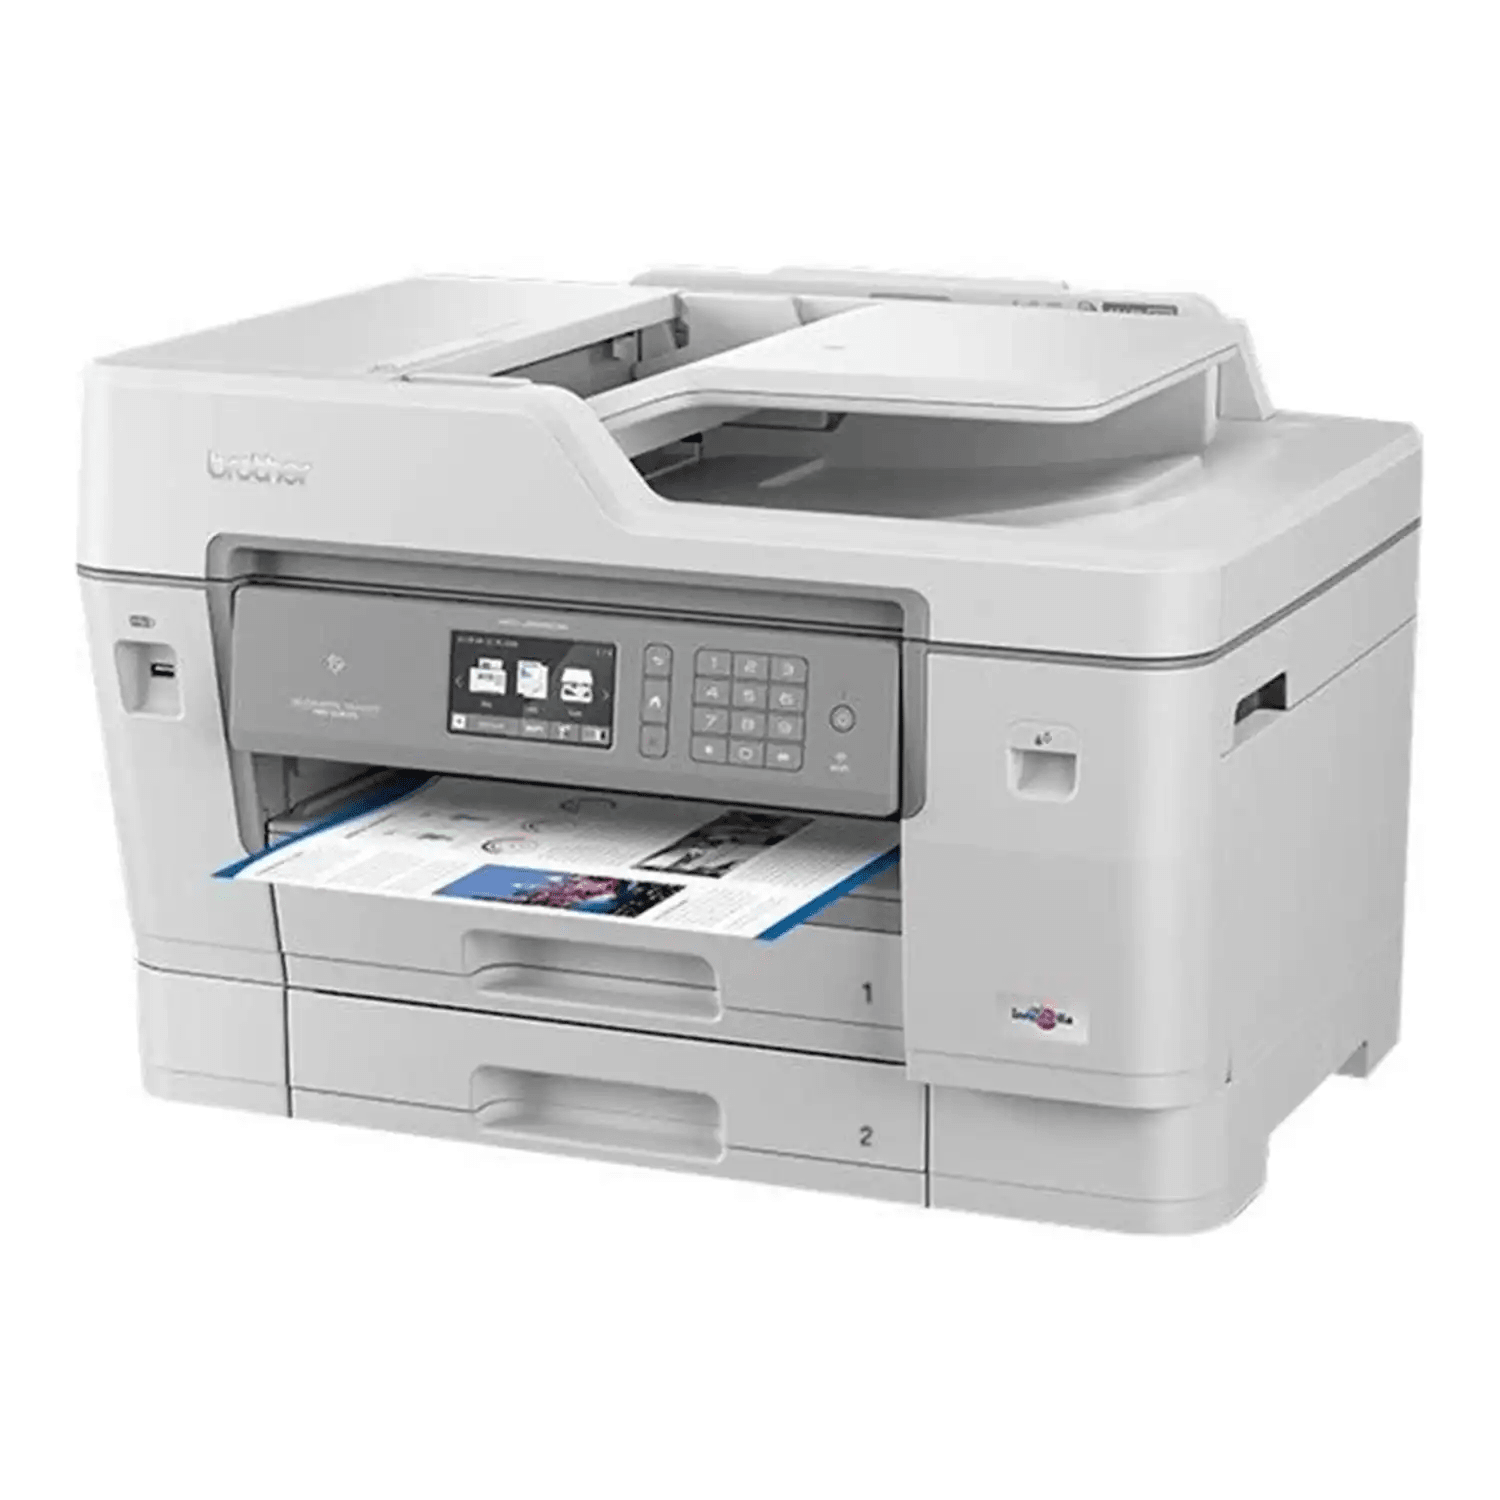 Brother MFC-J6955dw Imprimante multifonction A3 couleur - PrintOffice&Co